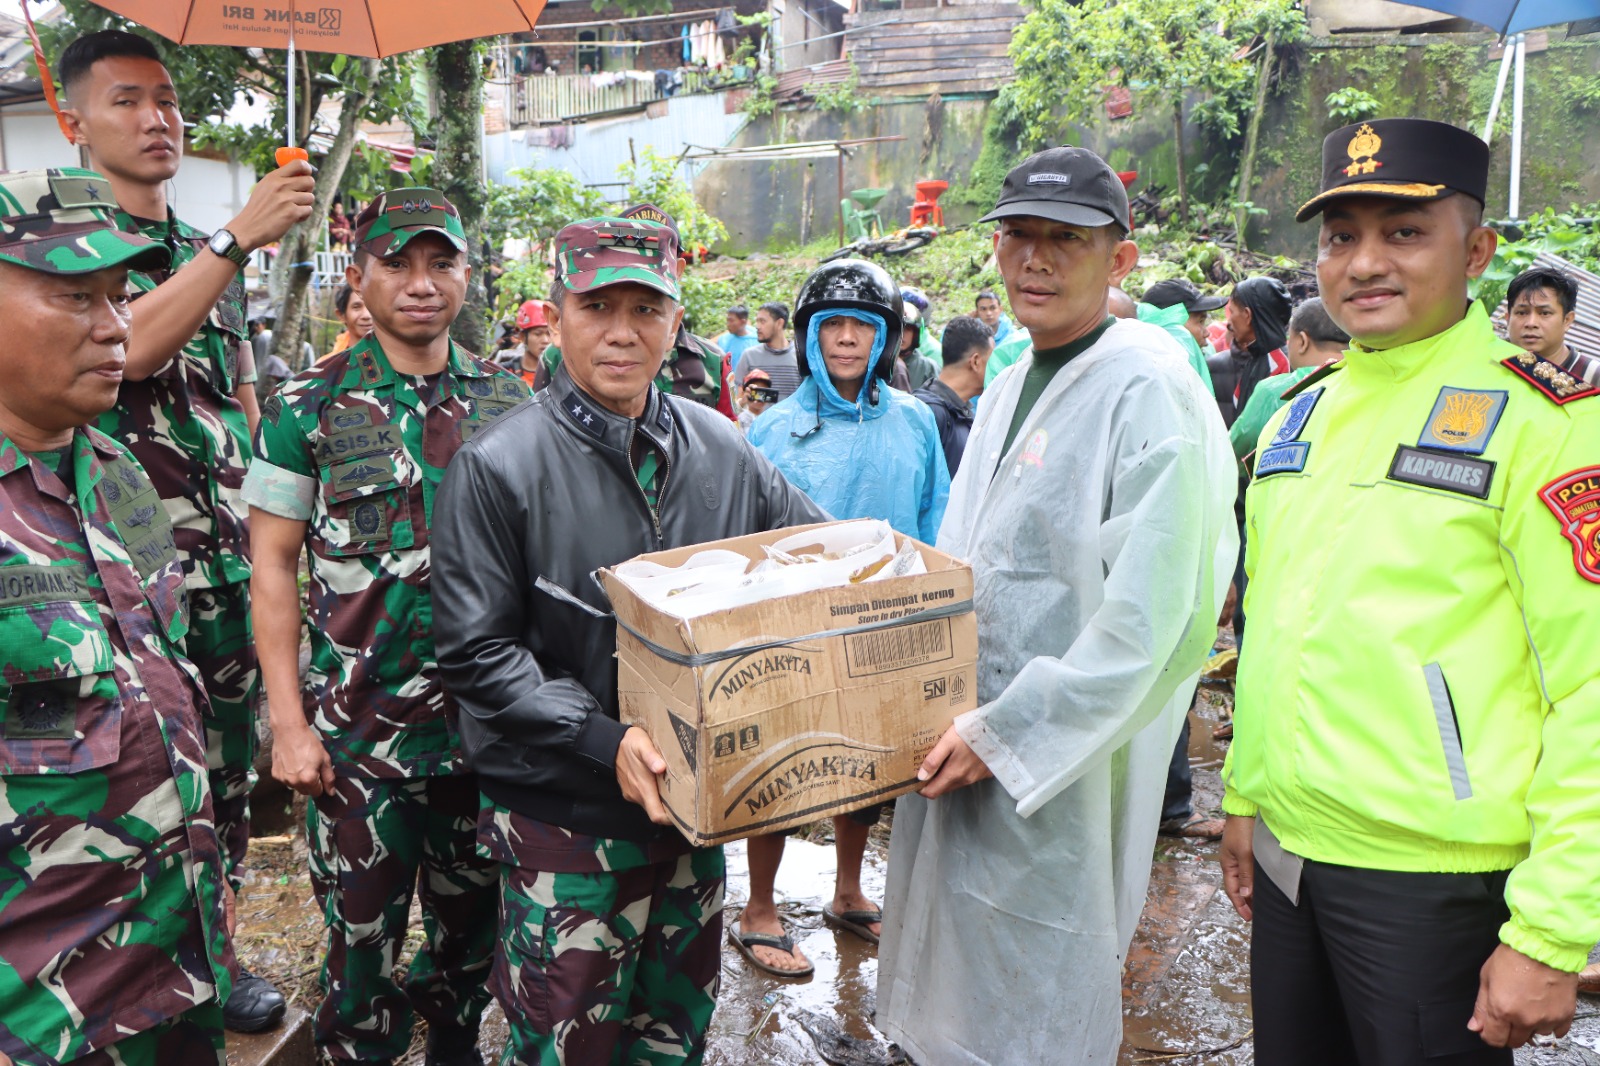 Bersama TNI, Polda Sumsel Evakuasi dan Salurkan Bantuan Kemanusiaan untuk Korban Banjir di Pagaralam dan Lahat